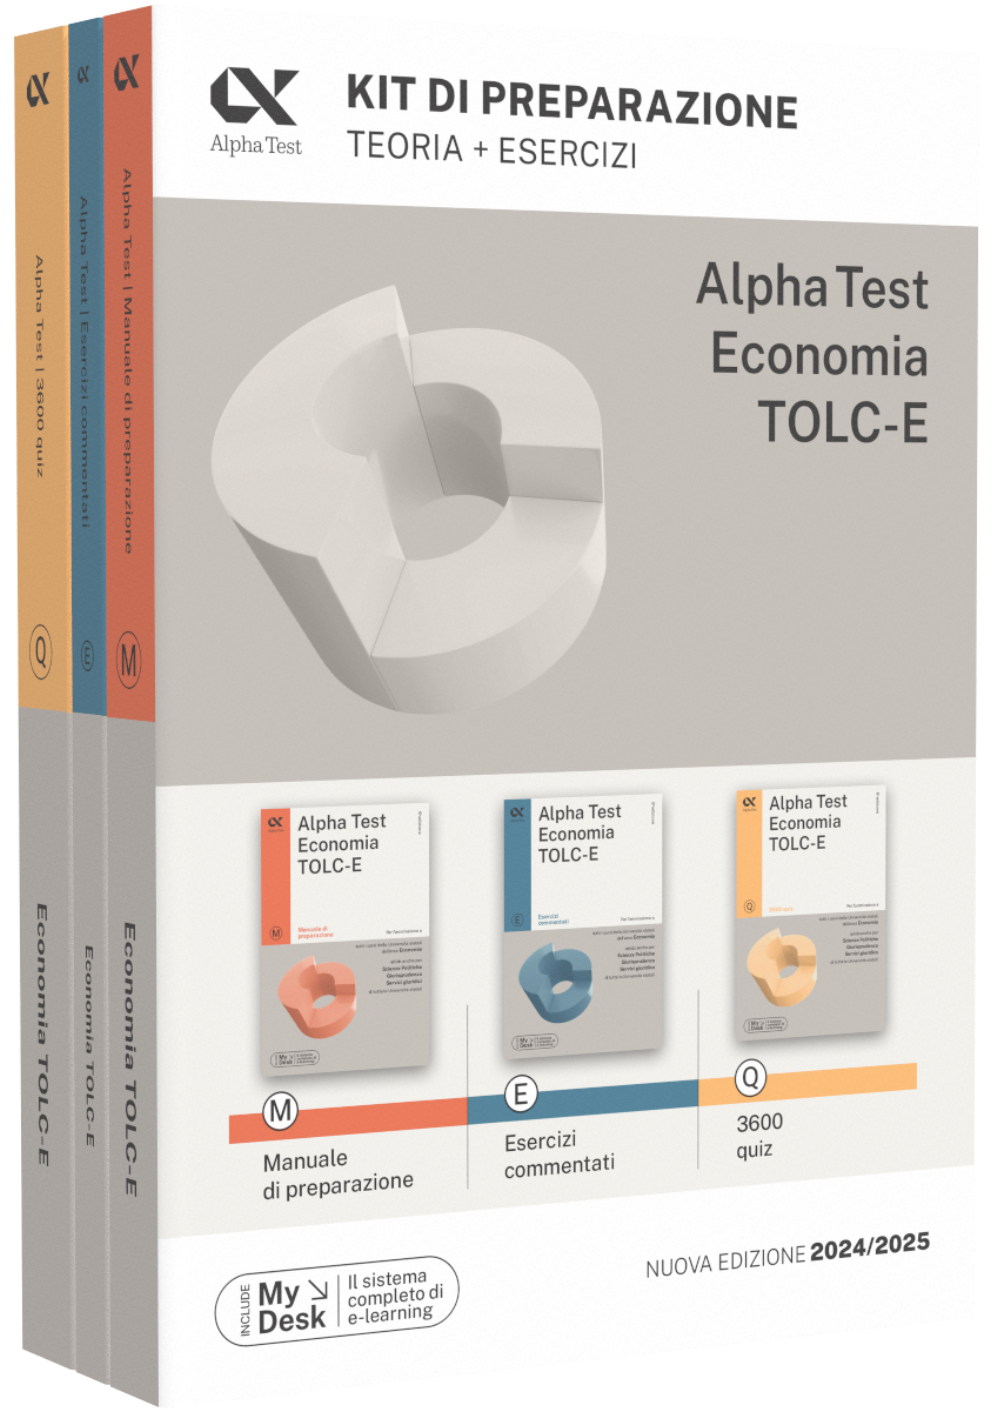 Alpha-Test-Economia-TOLC-E-Kit-di-preparazione-978-88-483-2672-8.png